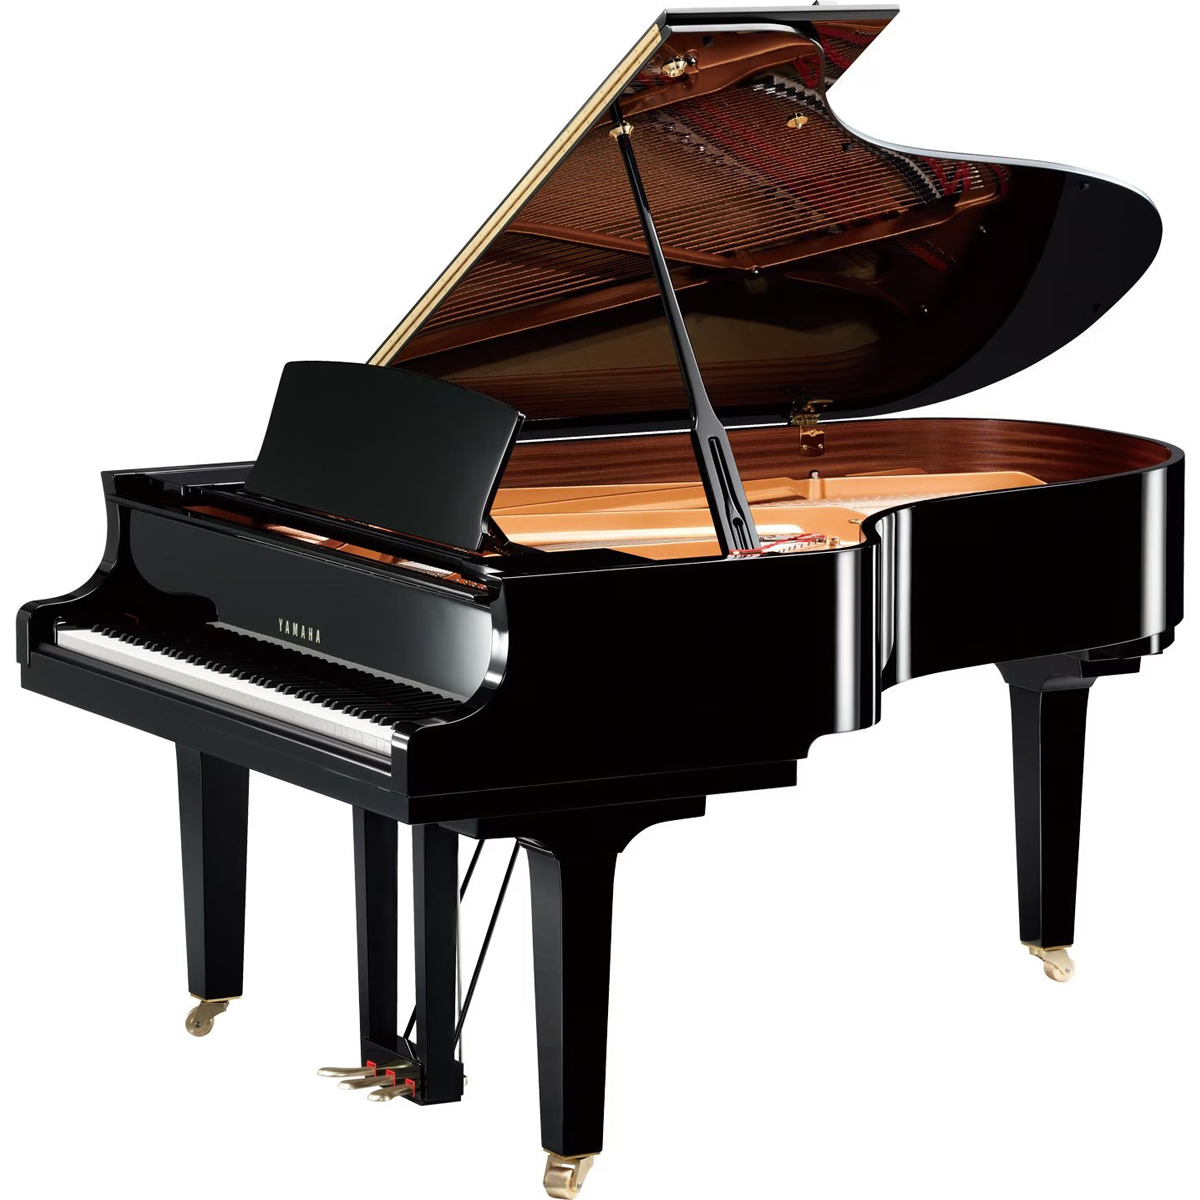 ヤマハグランドピアノC5X|販売|価格|展示|ショールーム|中古|愛知|犬山|名古屋|岐阜